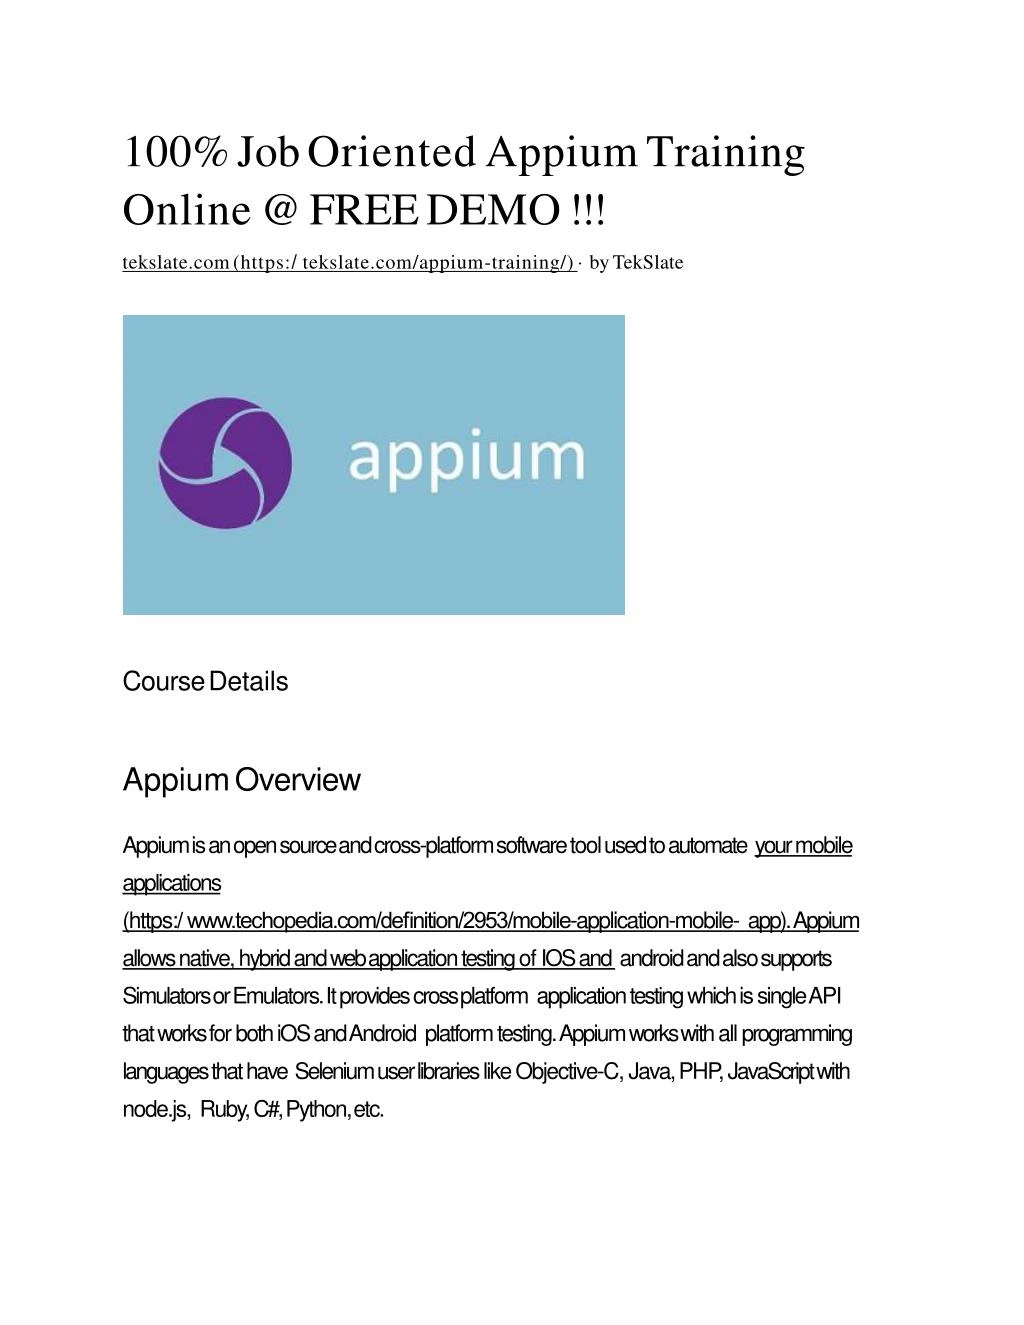 100 job oriented appium training online @ free demo